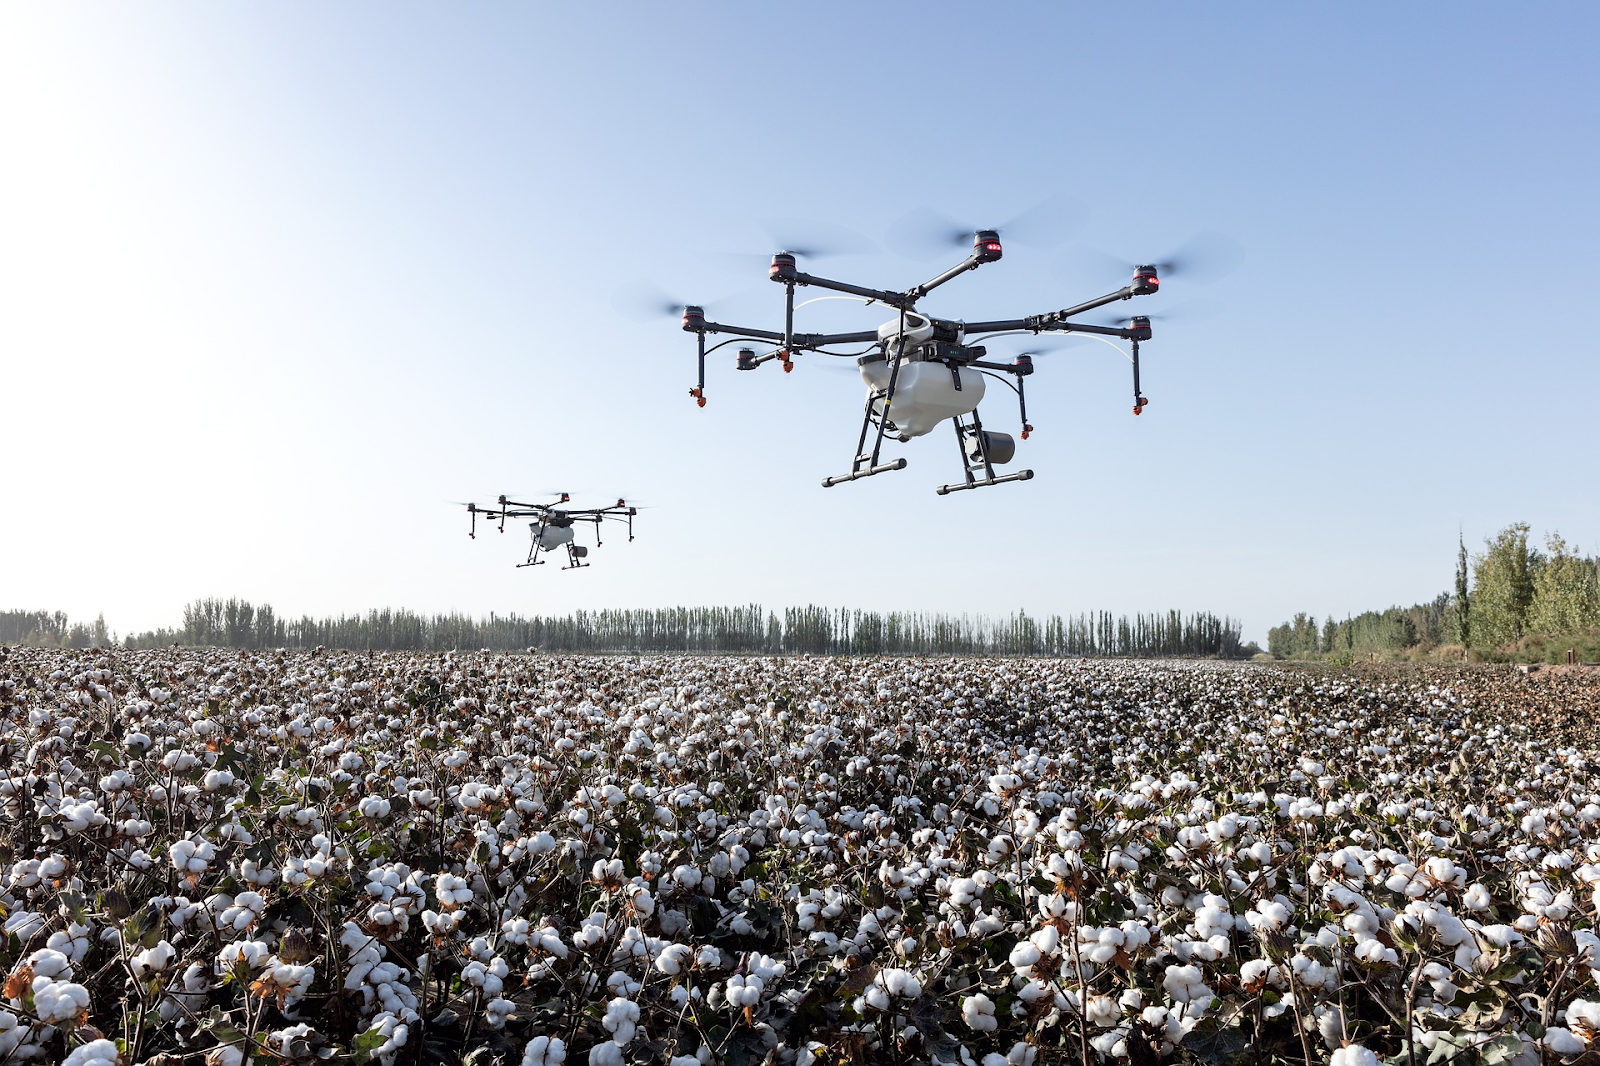 Pulverização com drones "Descubra como os drones de pulverização estão revolucionando a agricultura. Conheça suas vantagens, custos e aplicações.